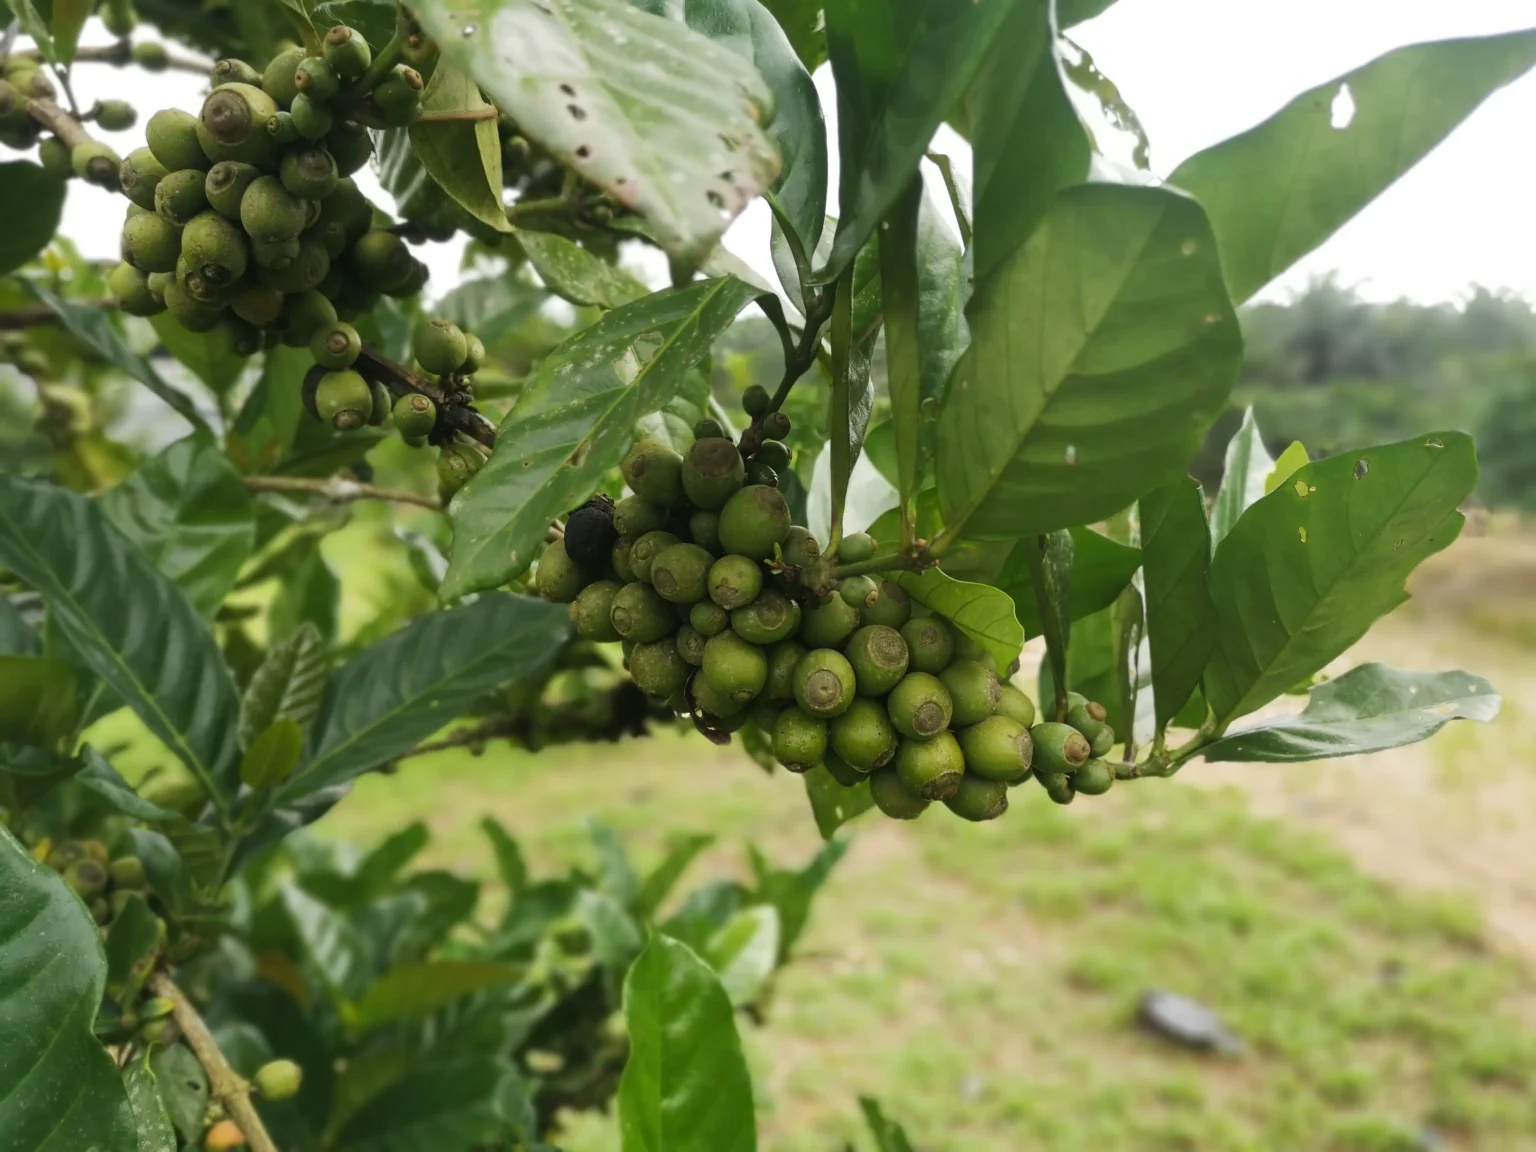 Unripe coffee cherries on liberica coffee tree in Malaysia